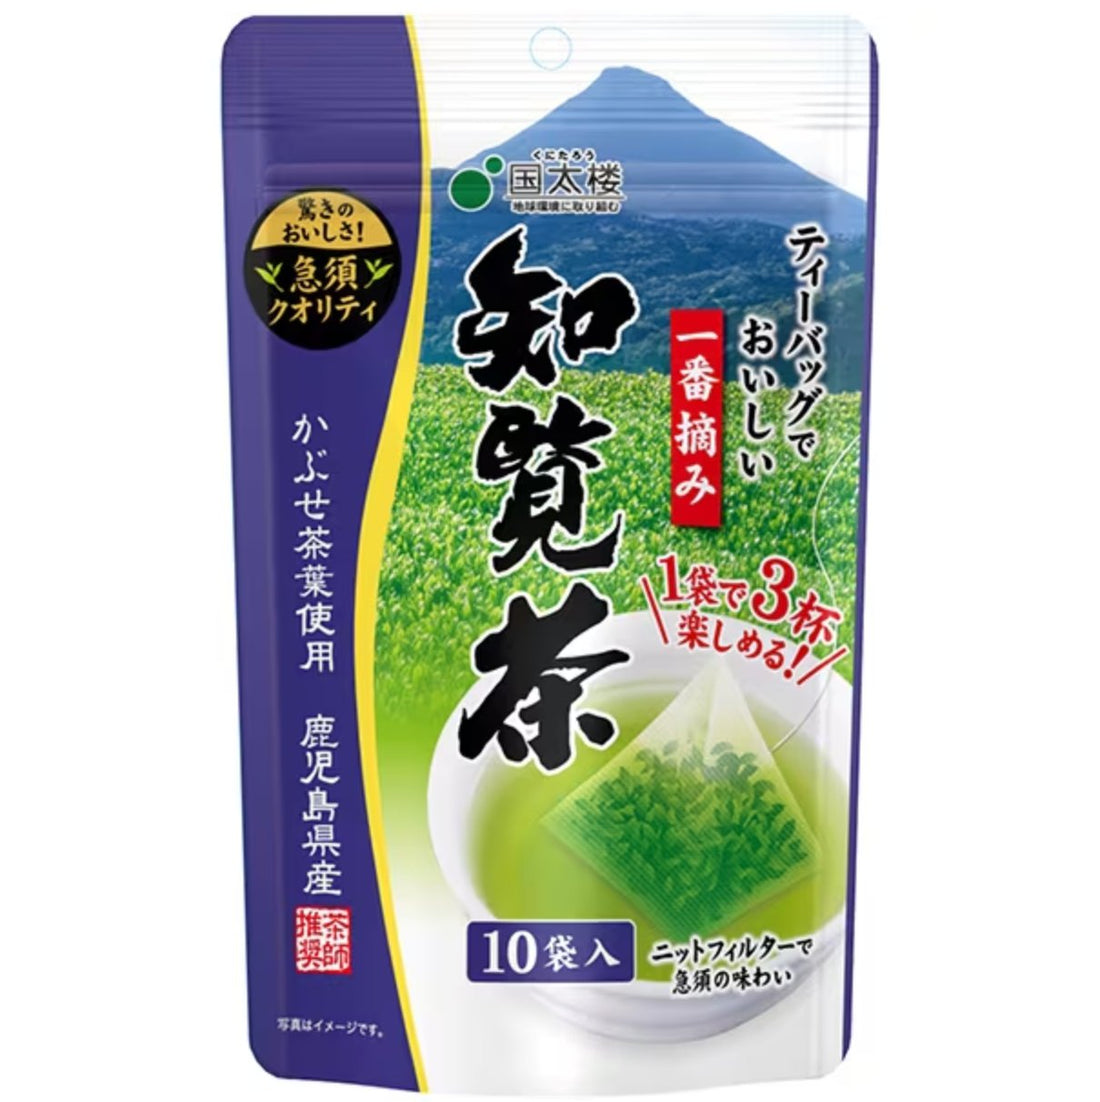 Kunitaro Delicious first-pick Chiran tea in tea bags 3g x 10 bags - NihonMura